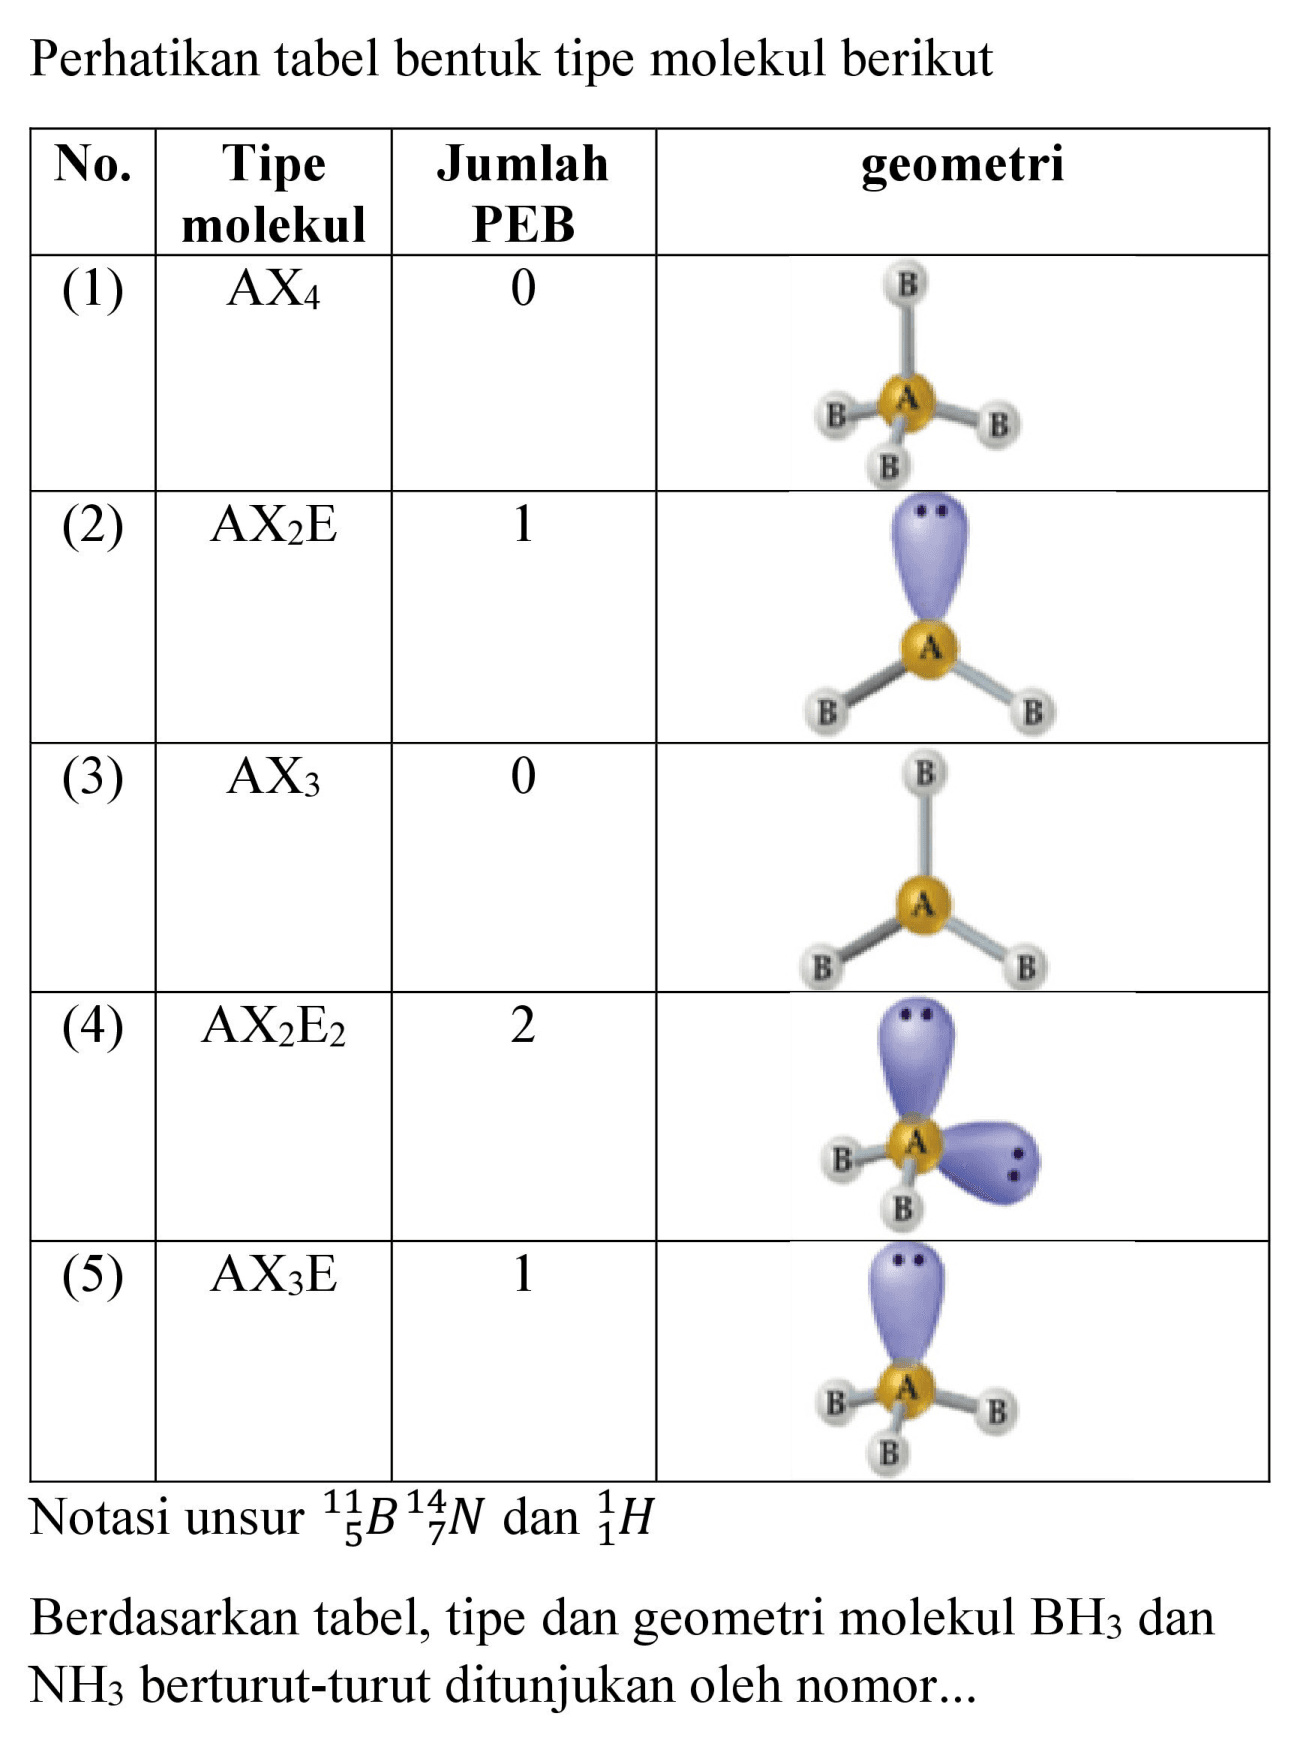 Perhatikan tabel bentuk tipe molekul berikut
Notasi unsur  { )_(5)^(11) B_(7)^(14) N  dan  { )_(1)^(1) H 
Berdasarkan tabel, tipe dan geometri molekul  BH_(3)  dan  NH_(3)  berturut-turut ditunjukan oleh nomor...